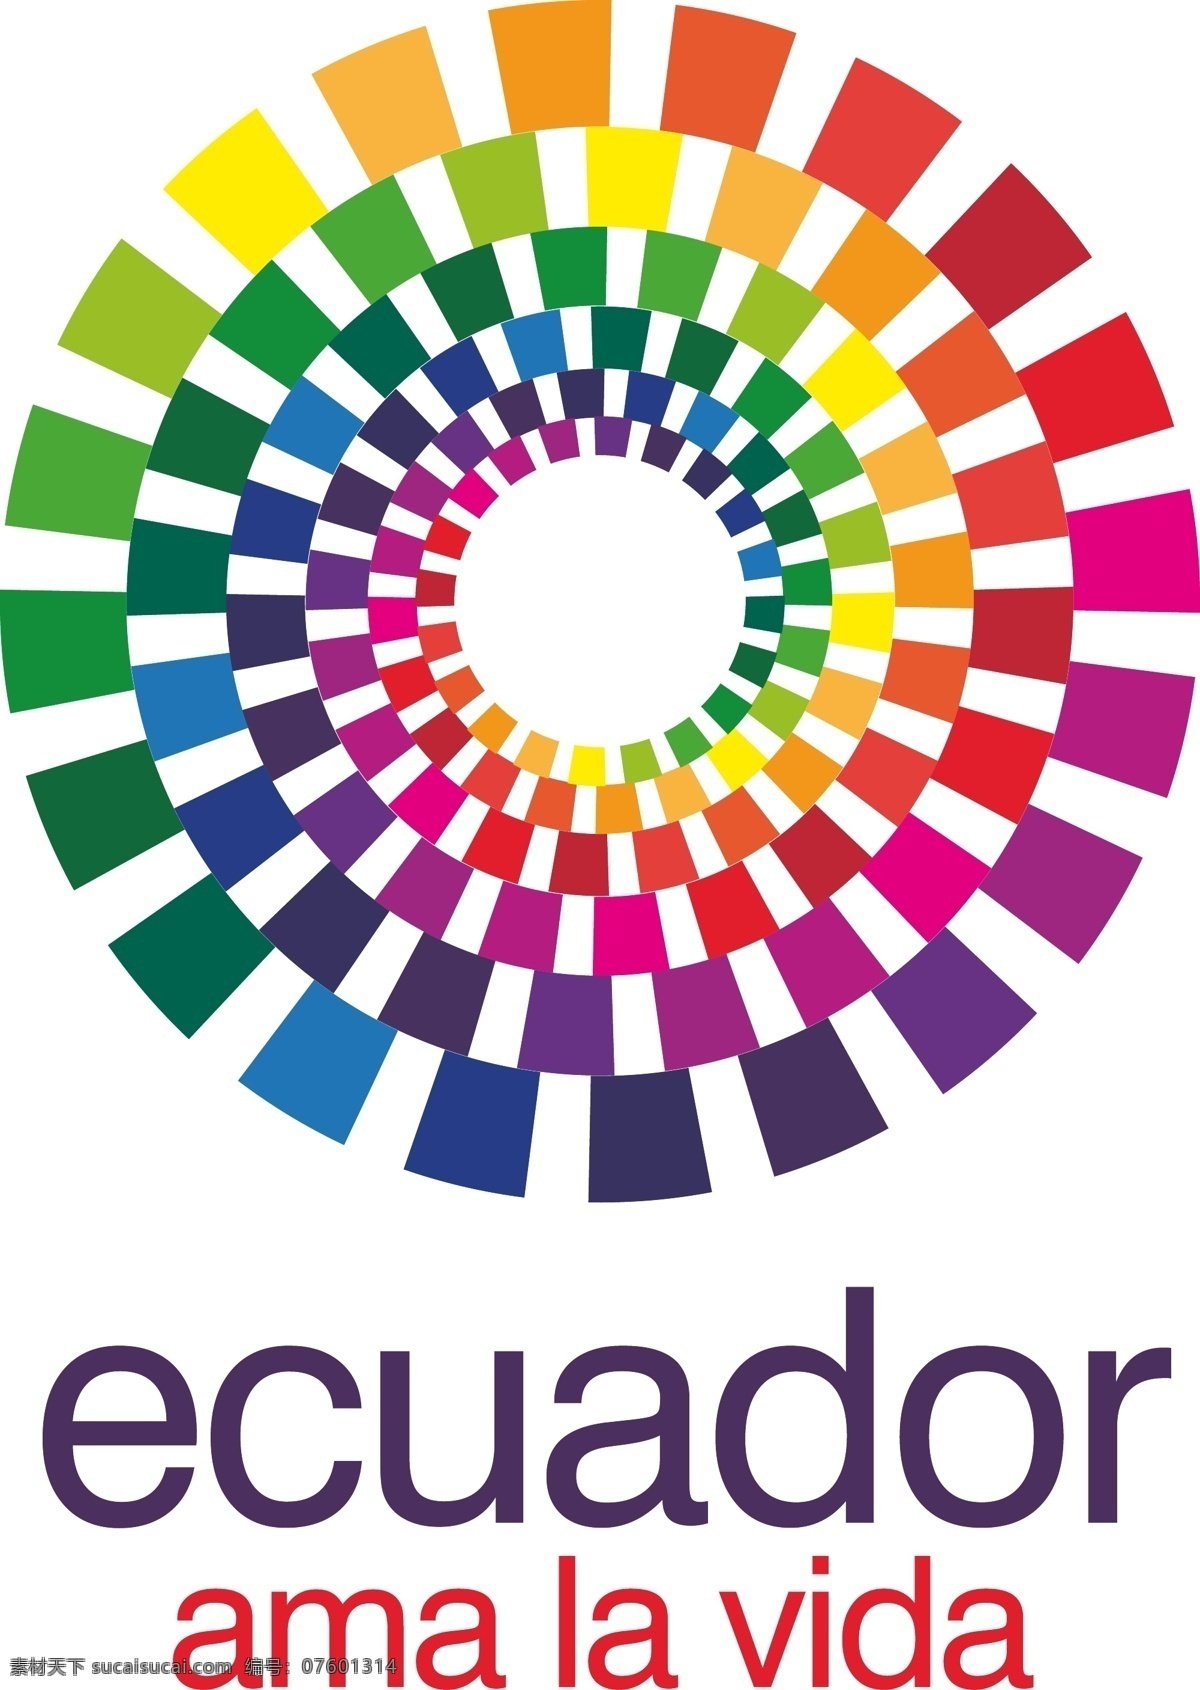 厄瓜多尔 矢量标志下载 免费矢量标识 商标 品牌标识 标识 矢量 免费 品牌 公司 白色